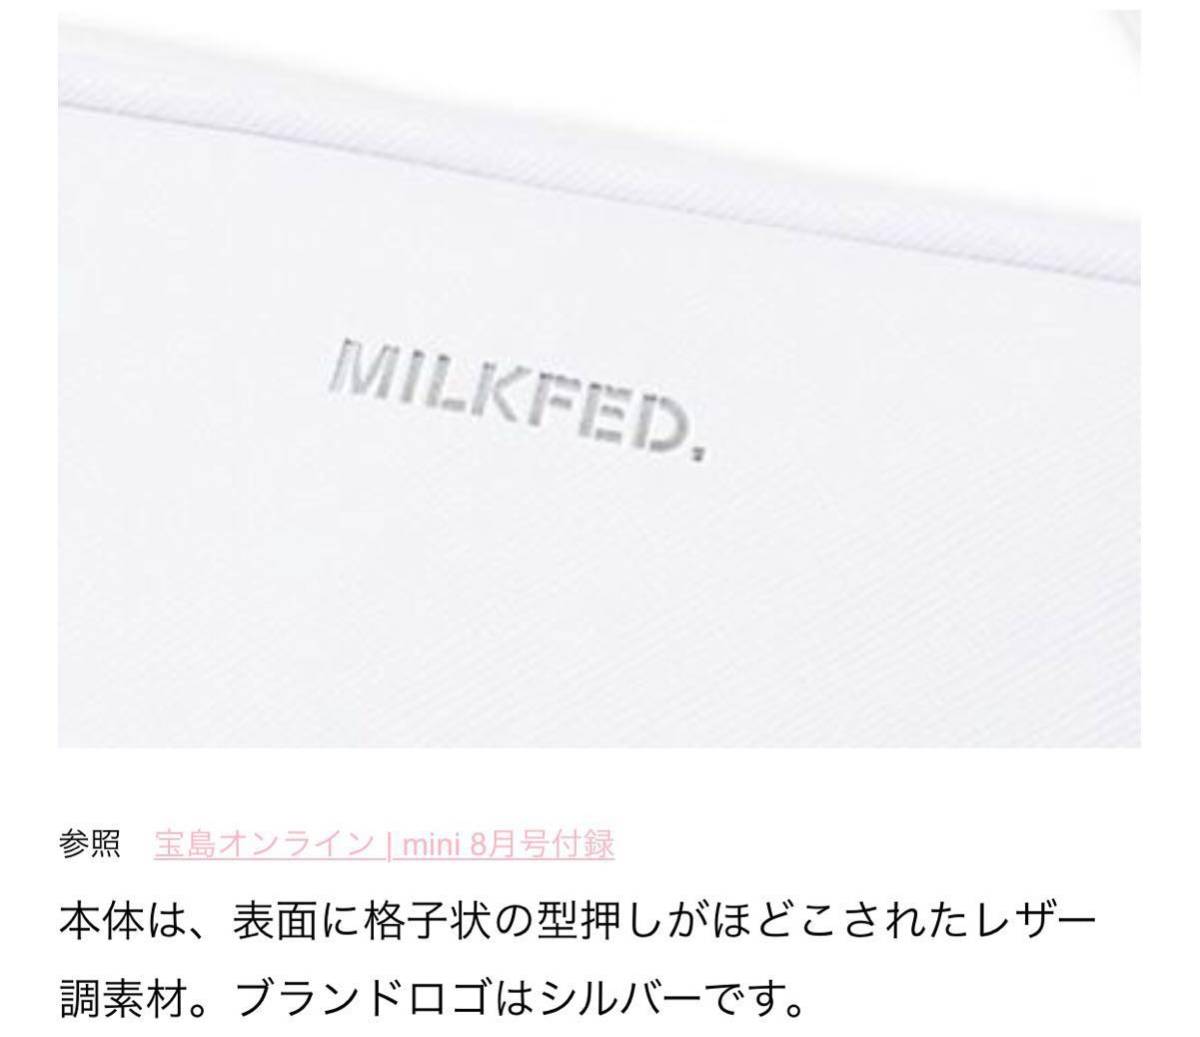 ヤフオク Mini ミニ 17年 8月号 雑誌 付録 Milkfed ミ